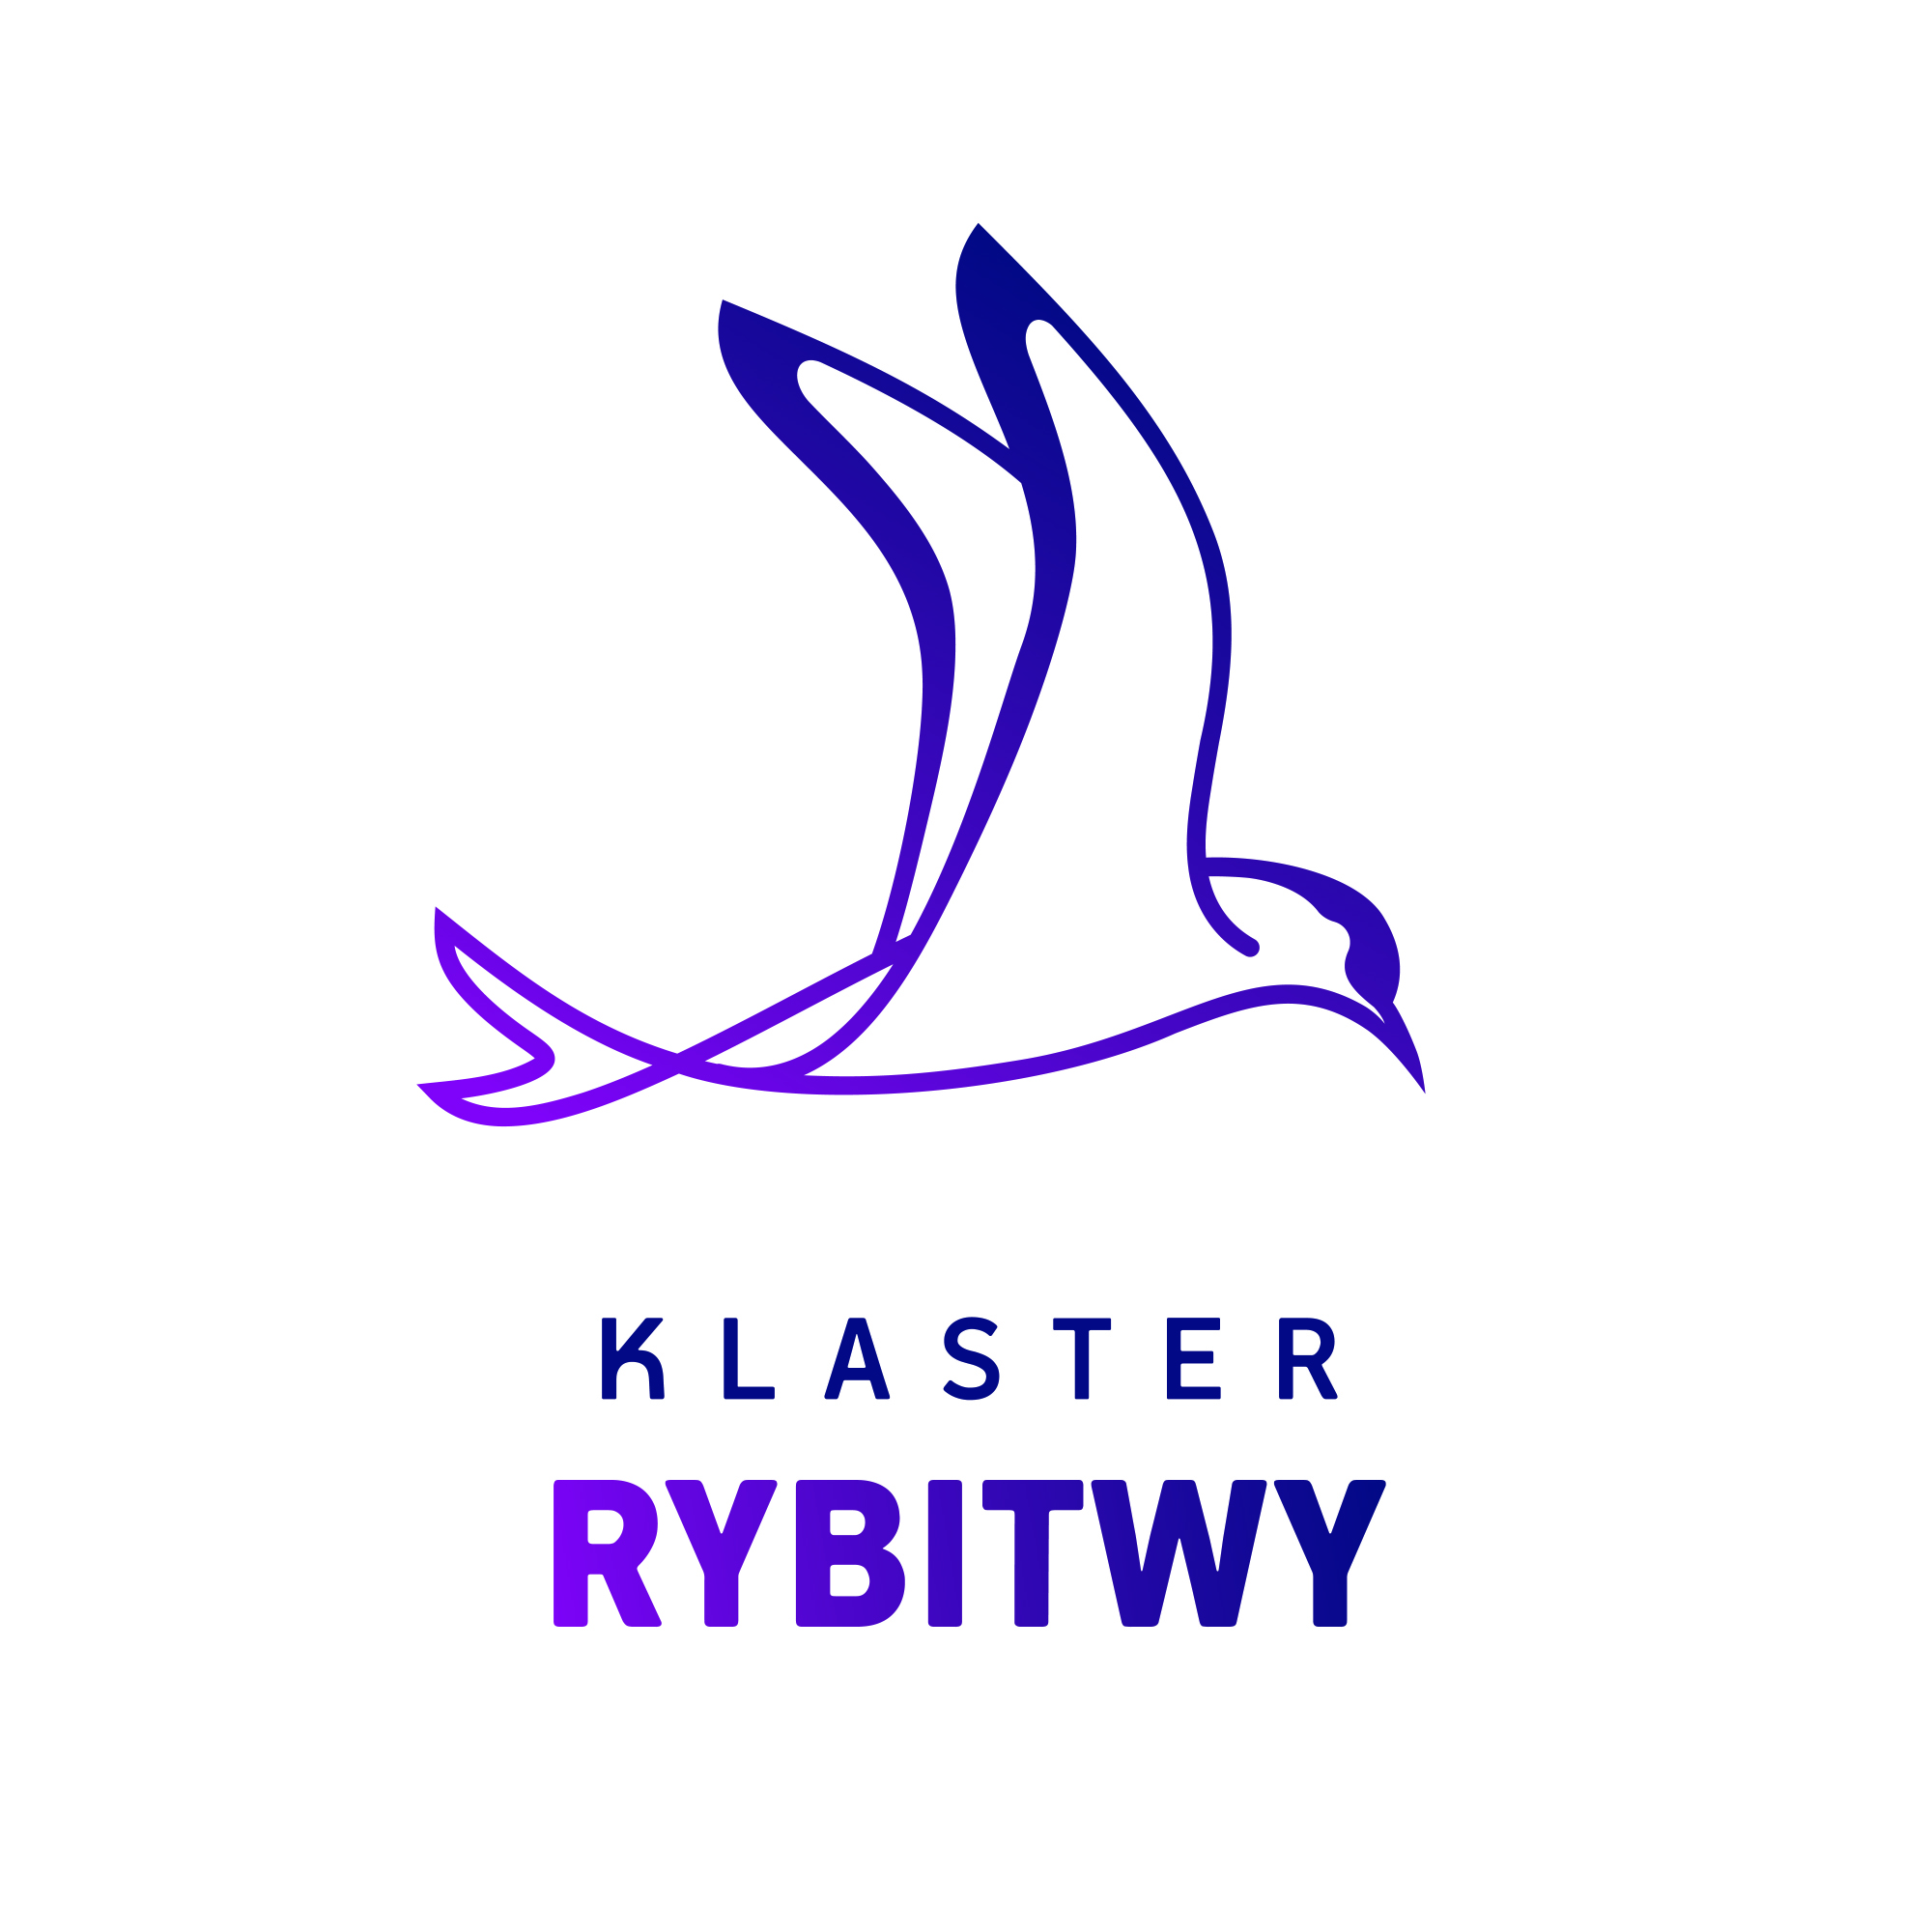 klaster_rybitwy_logo_v3a_CMYK.jpg